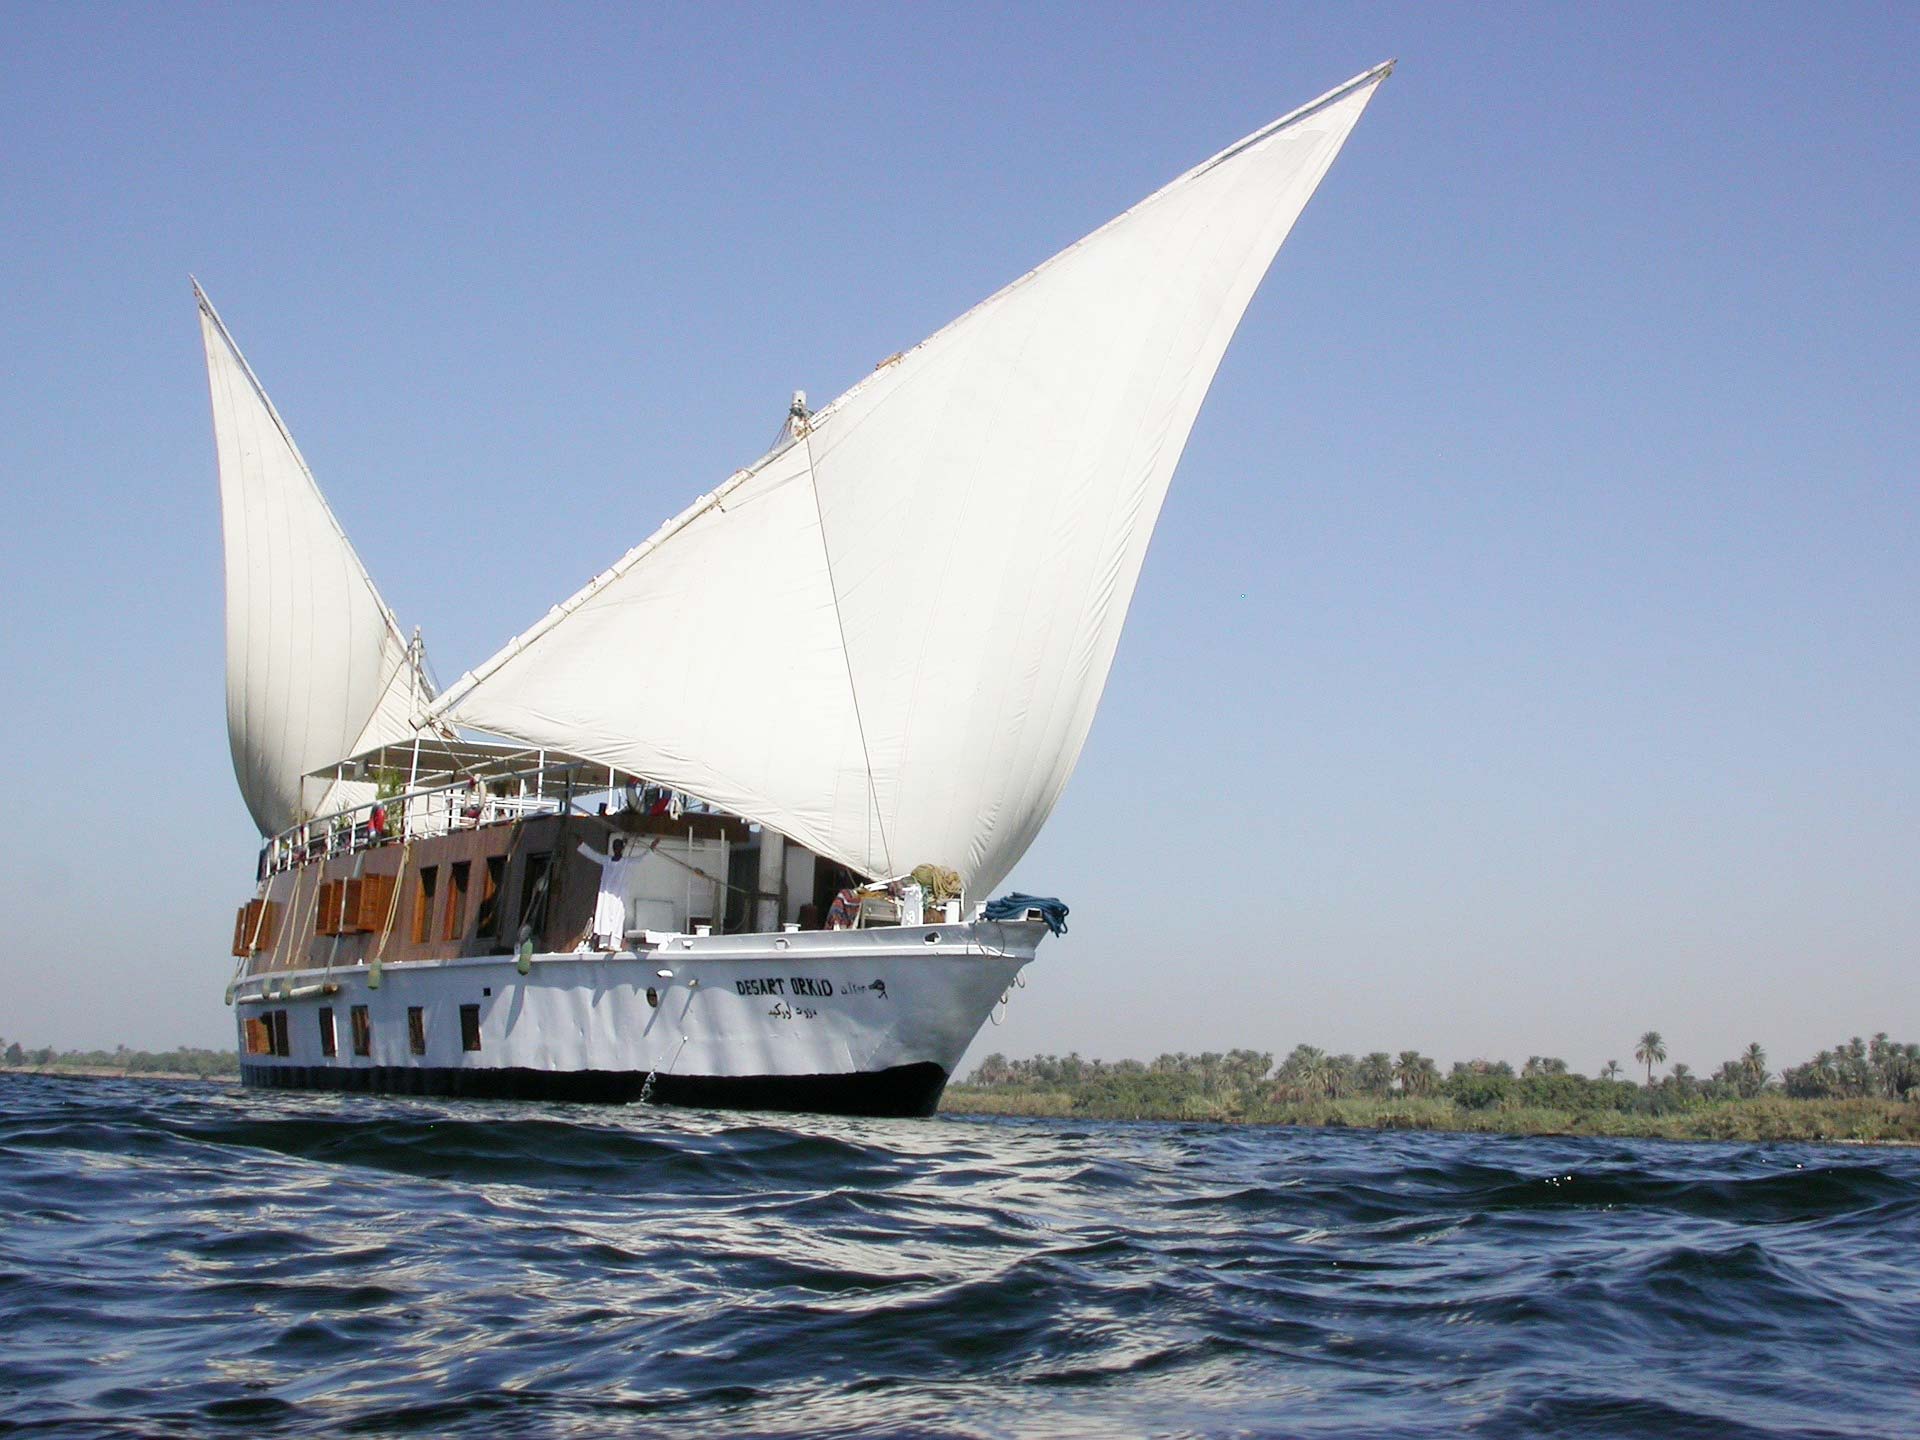 Dahabiya on the Nile river, Egypt